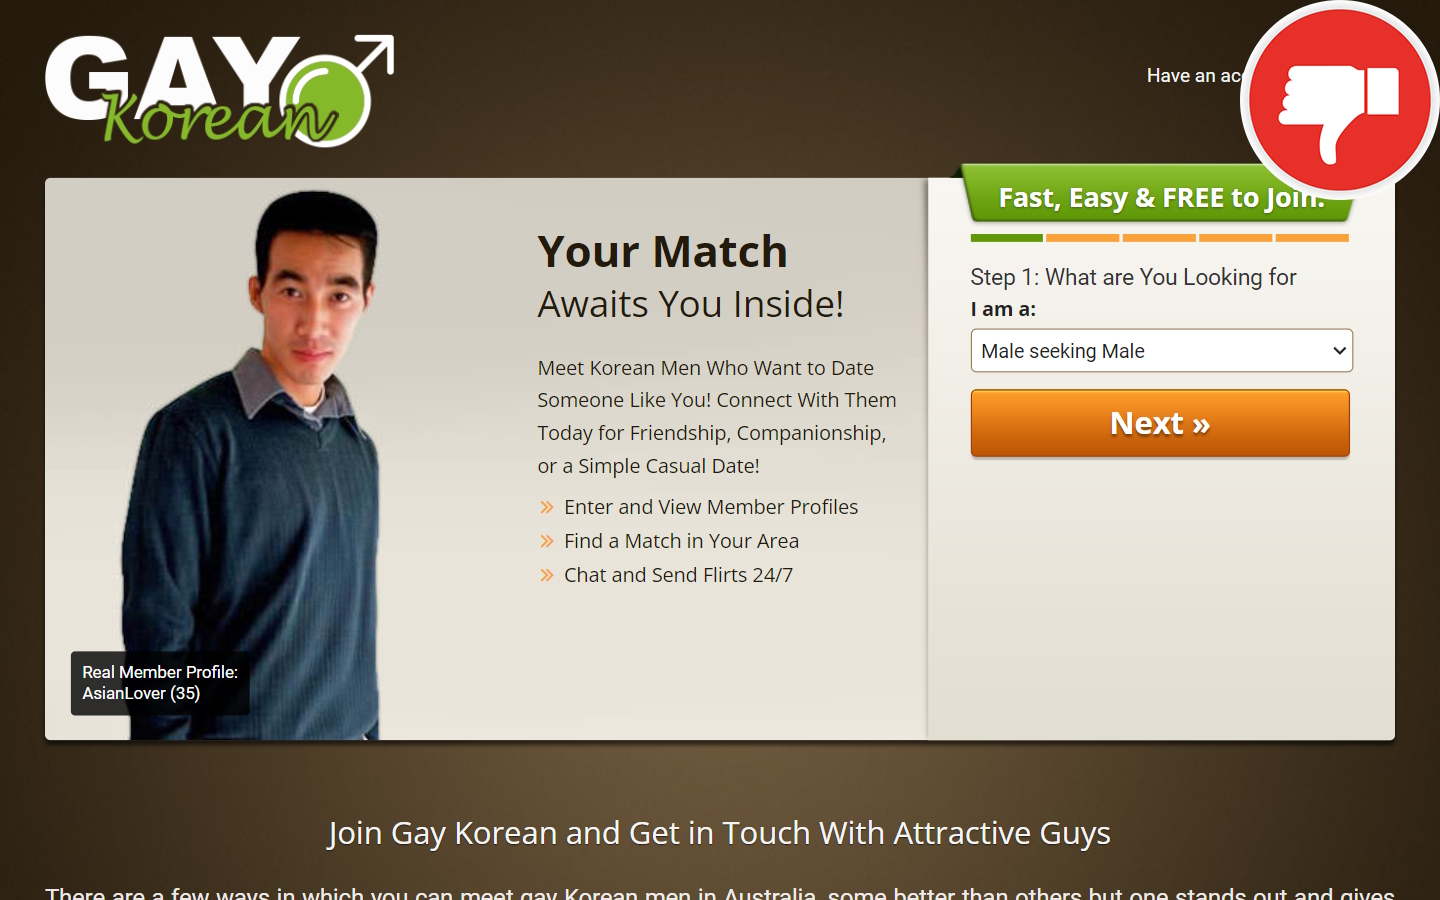 GayKorean.com.au review